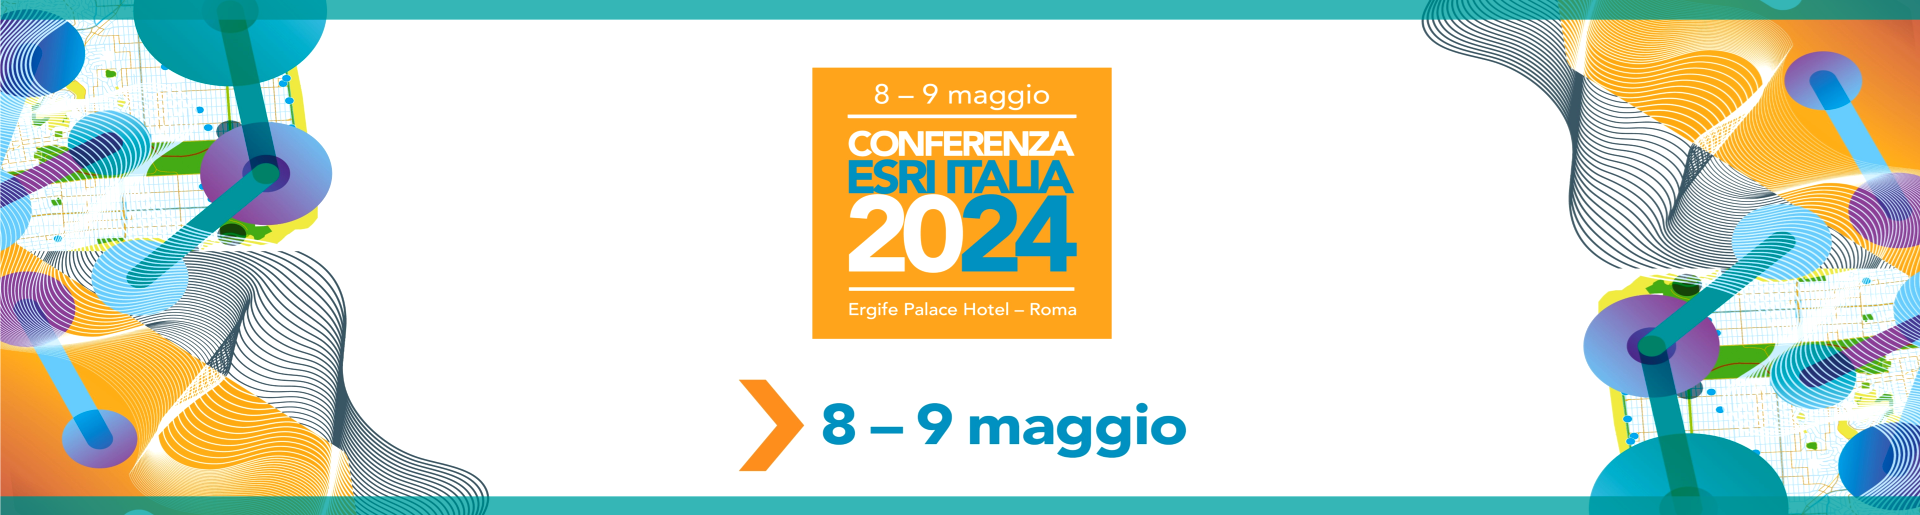 Conferenza Esri Italia 2024